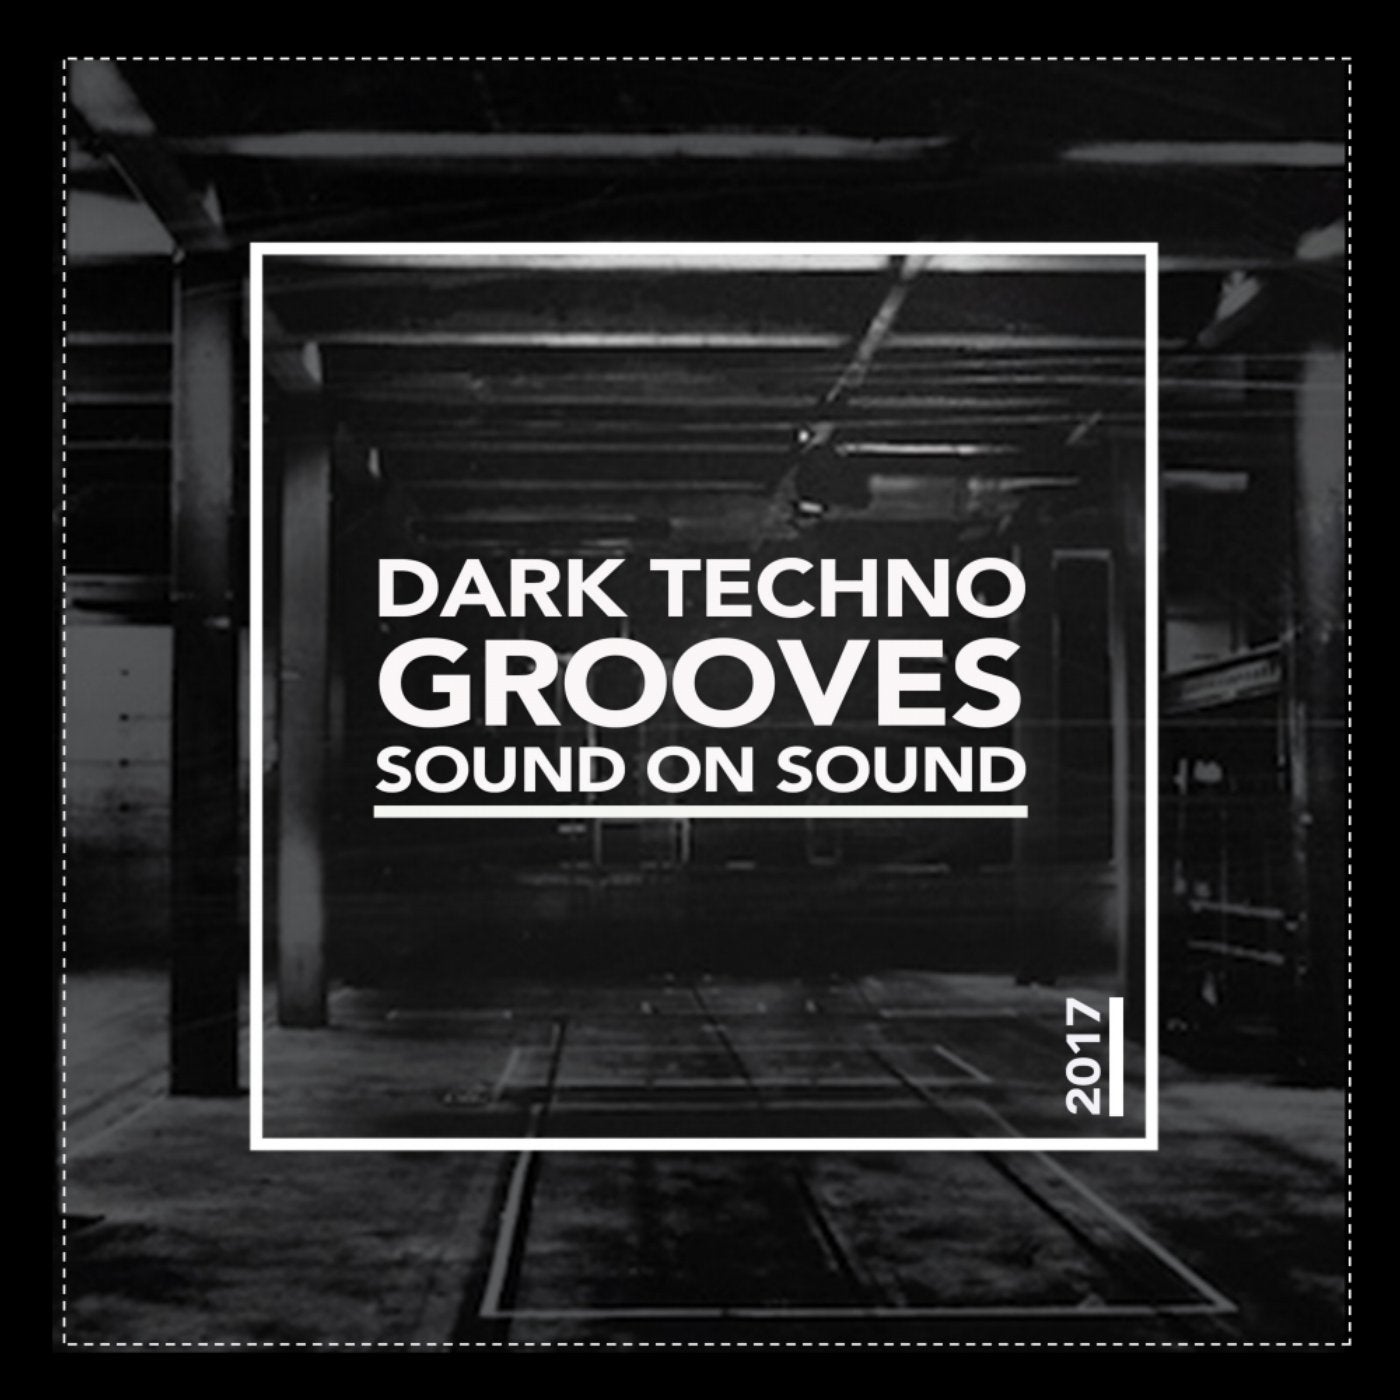 Dark Techno Grooves